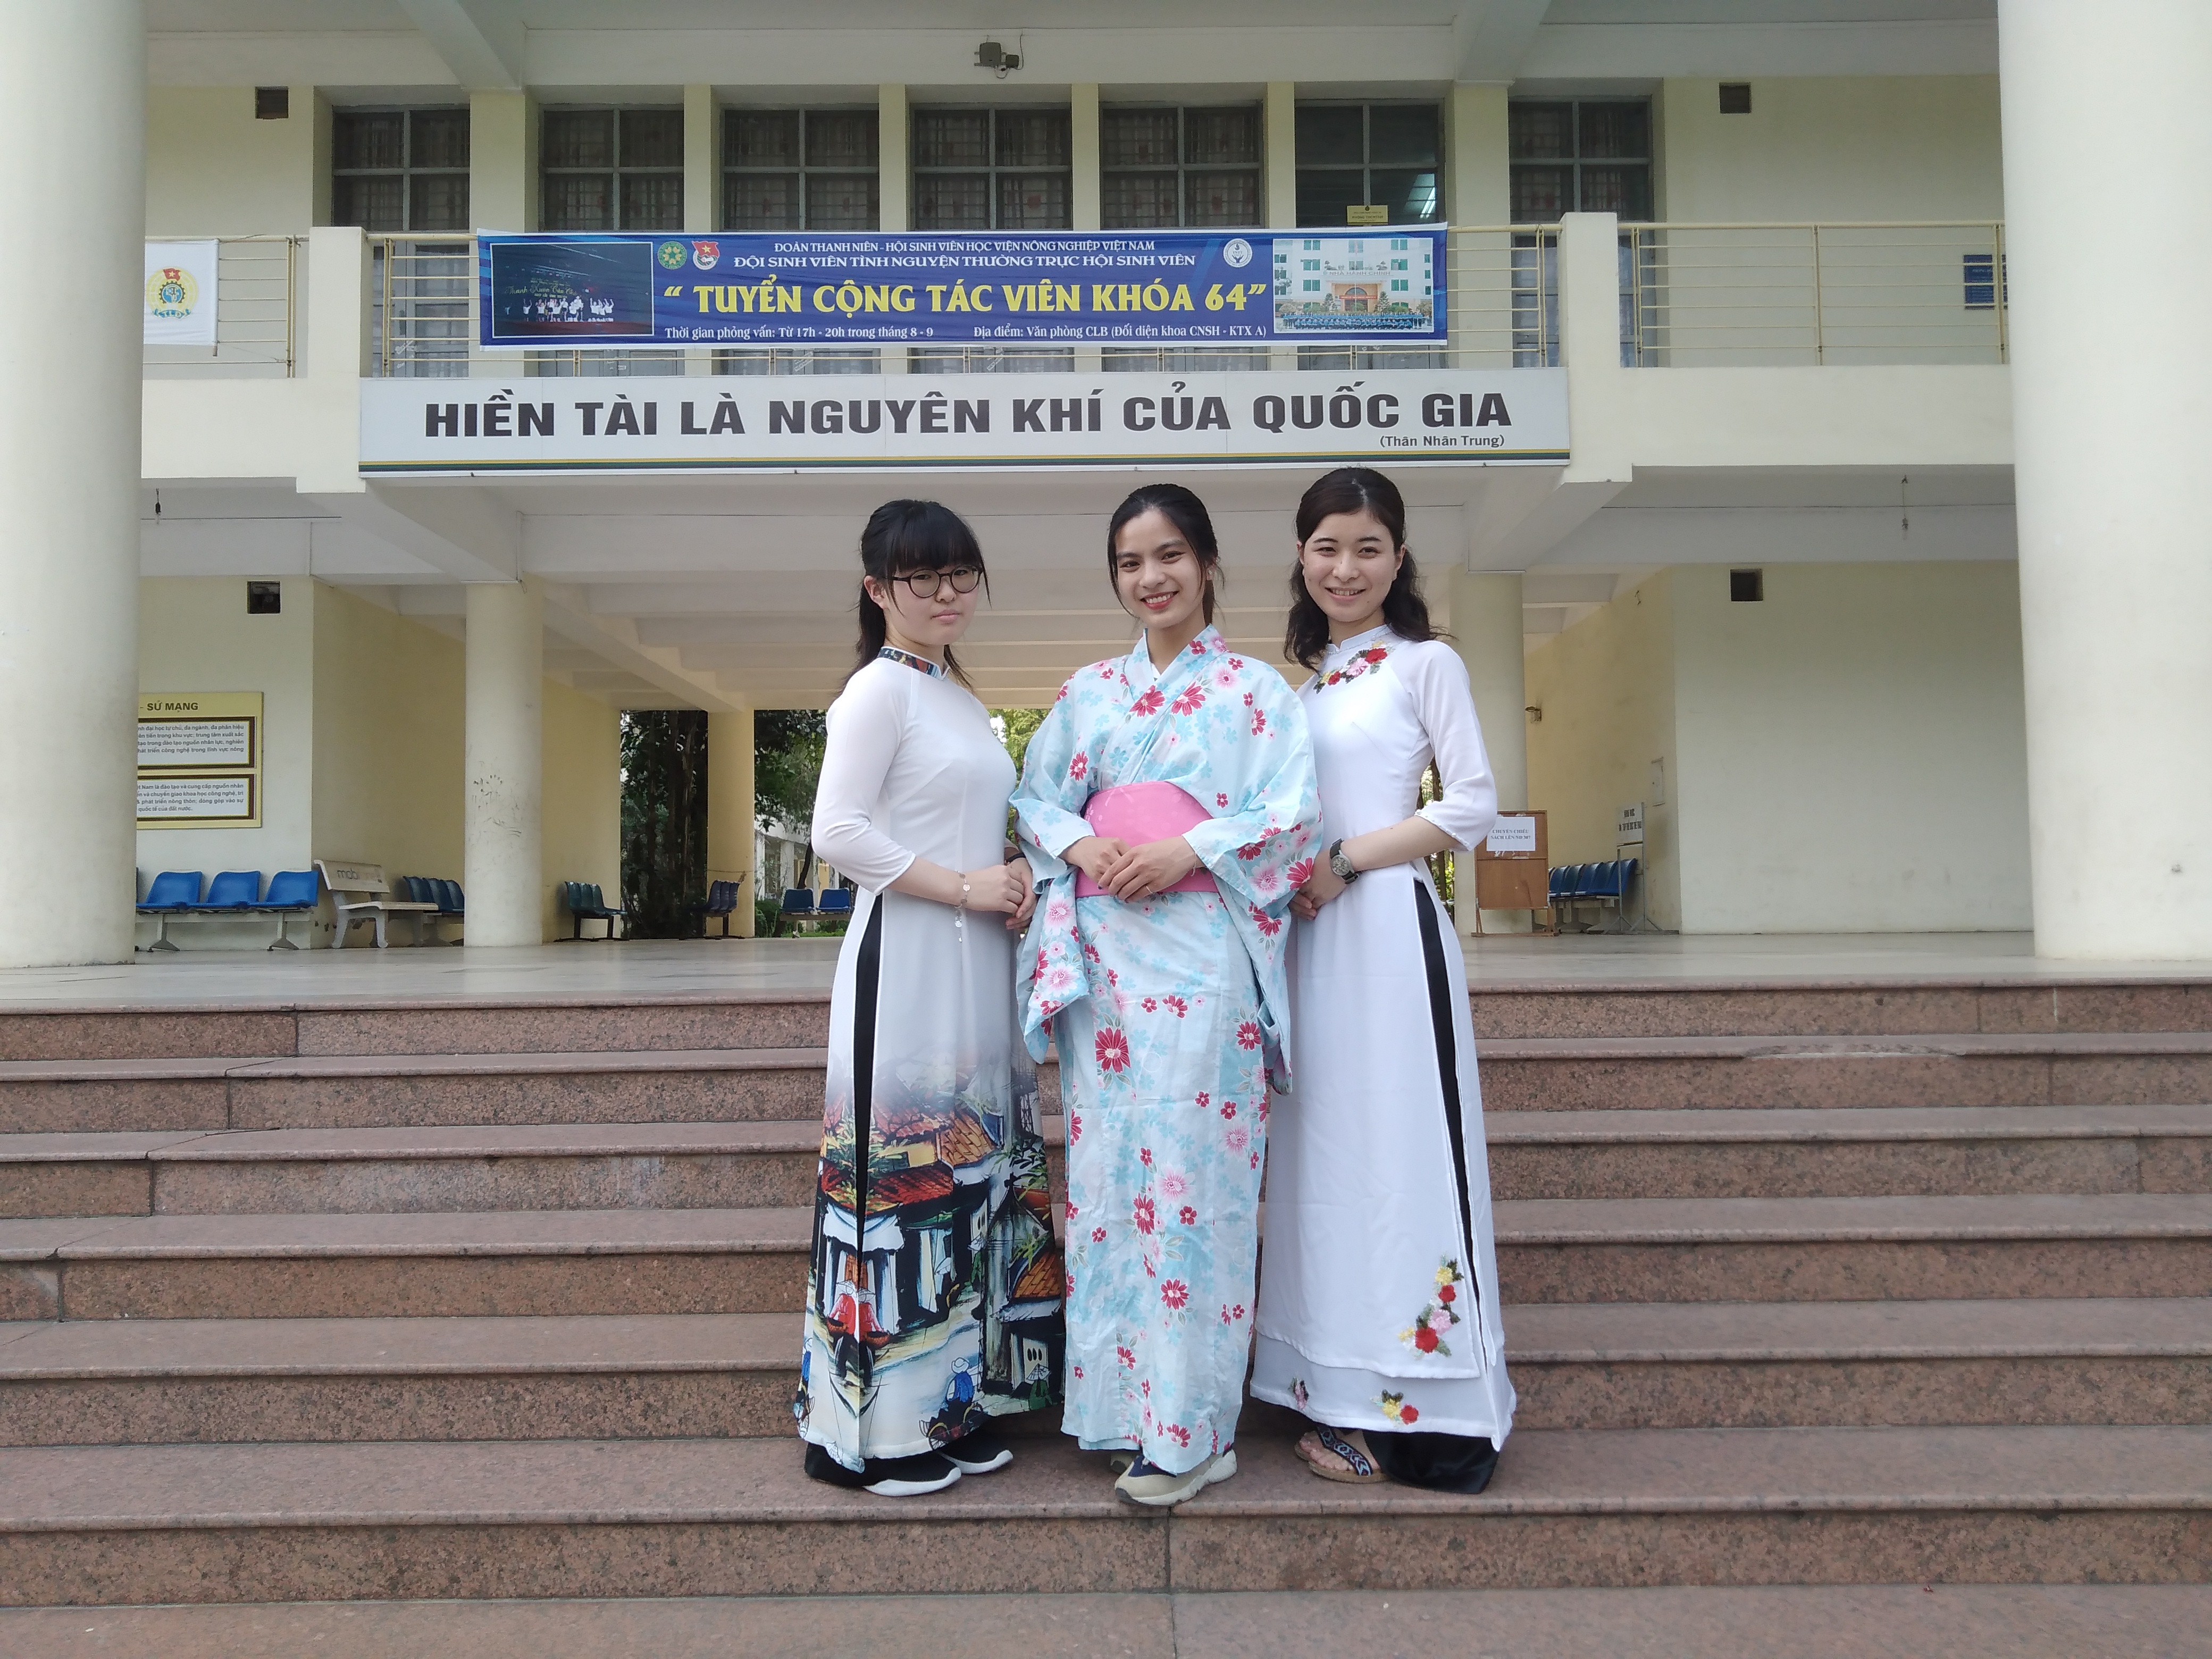 浴衣を着たベトナムの学生とアオザイを着た山大生の画像